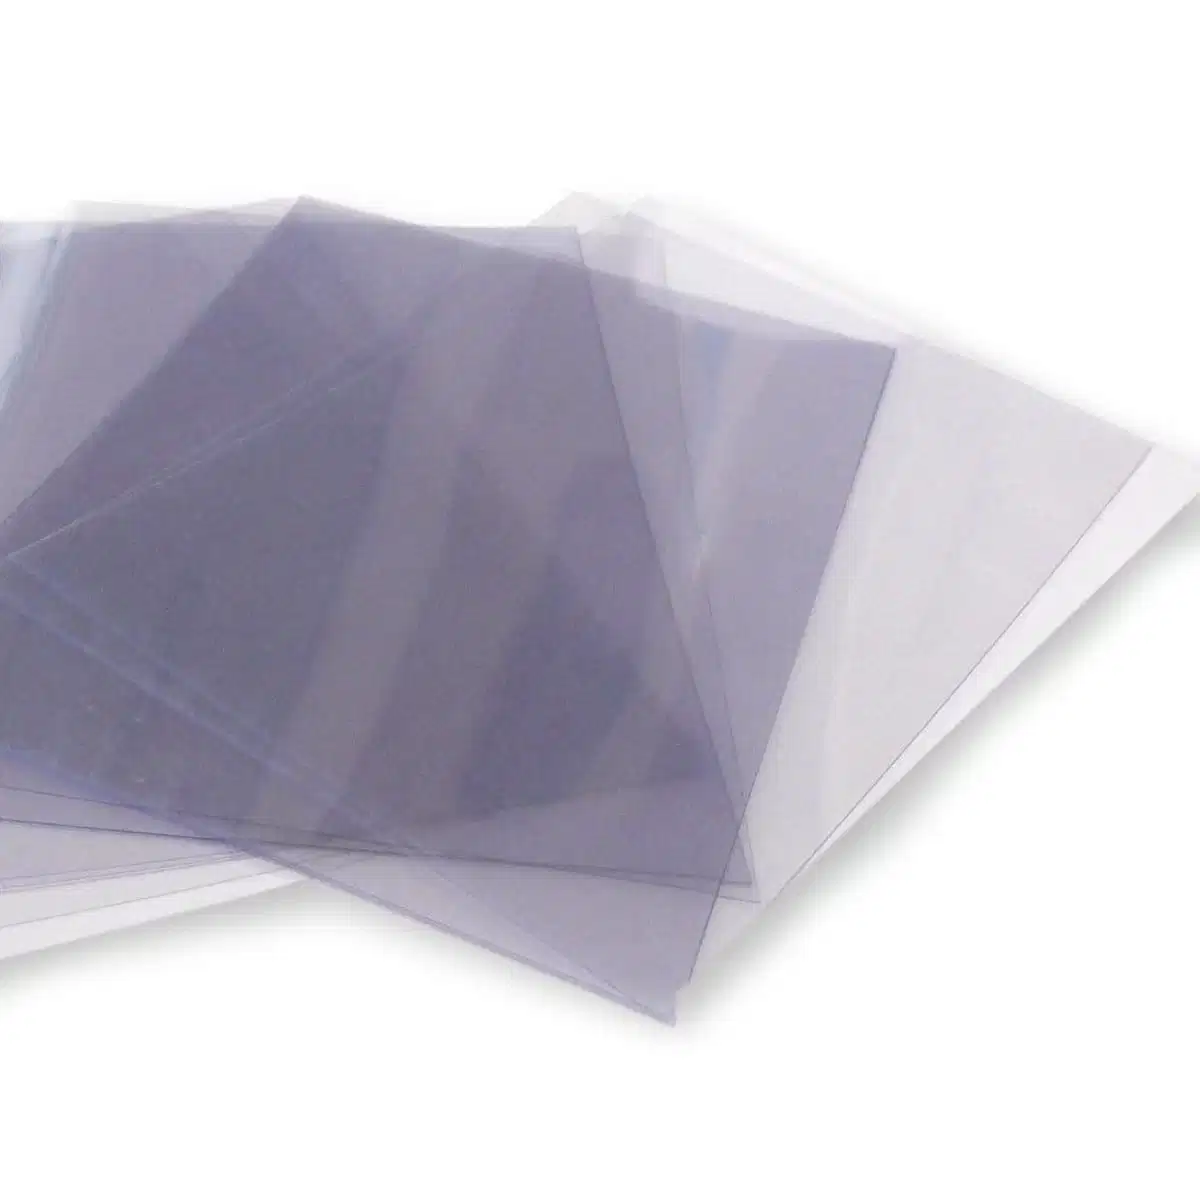 Película transparente de PVC rígido transparente de alta definição